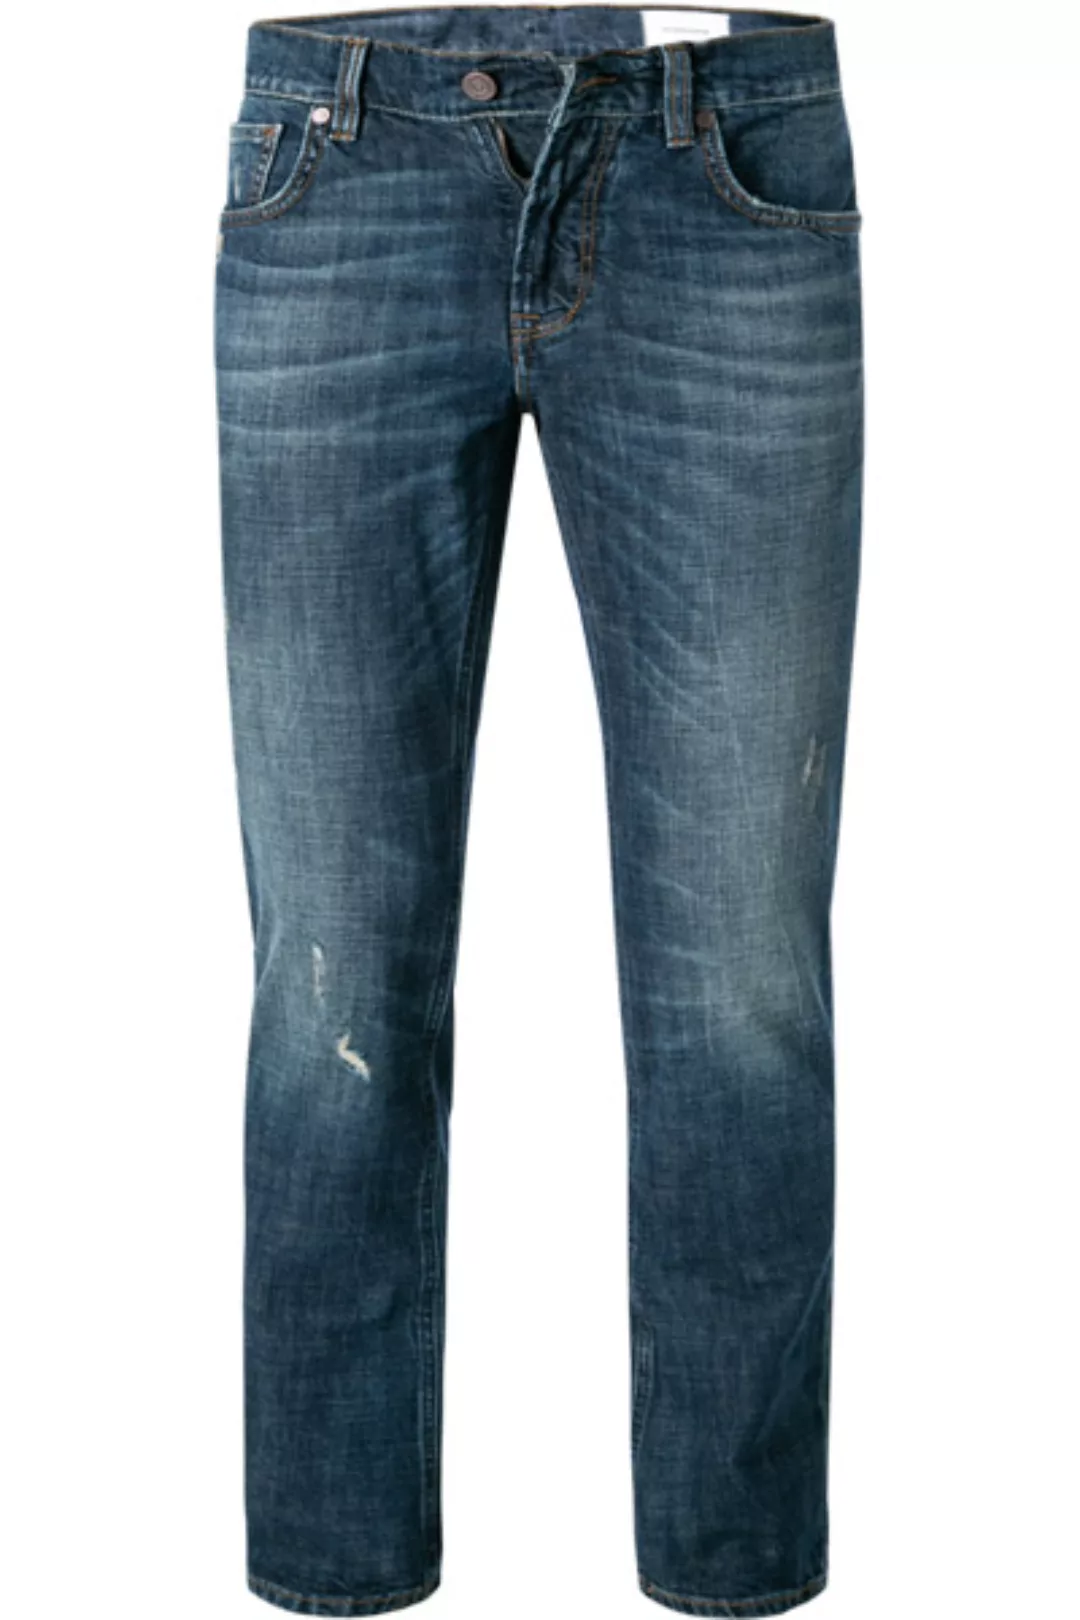 BALDESSARINI Jeans dunkelblau B1 16511.1412/6849 günstig online kaufen